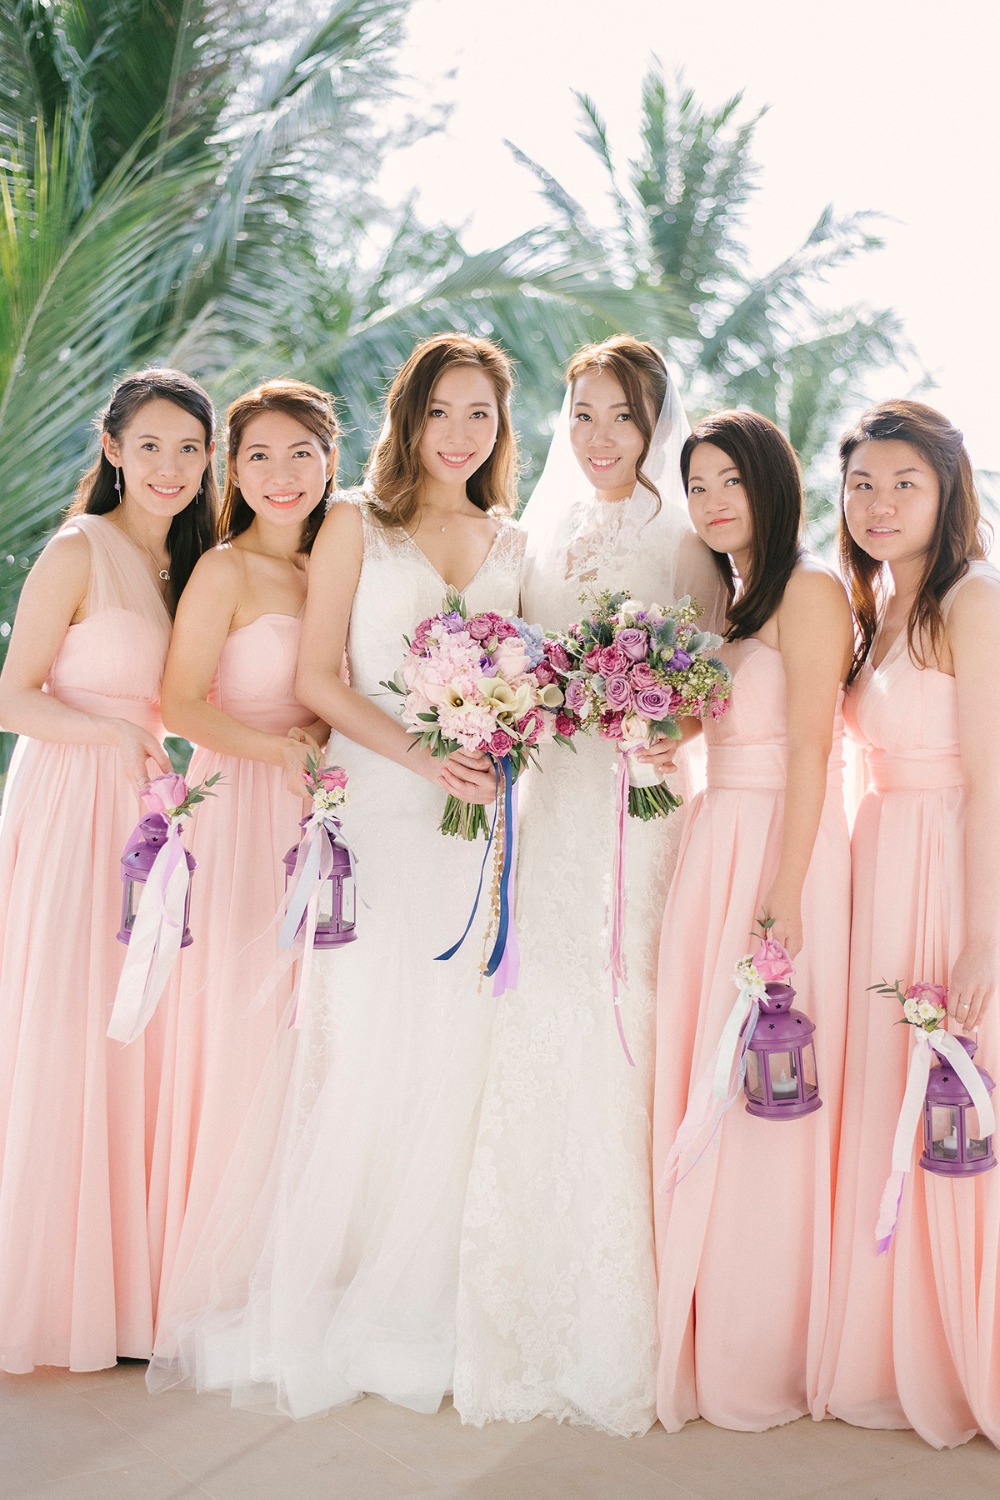 Sister duo wedding in Phuket